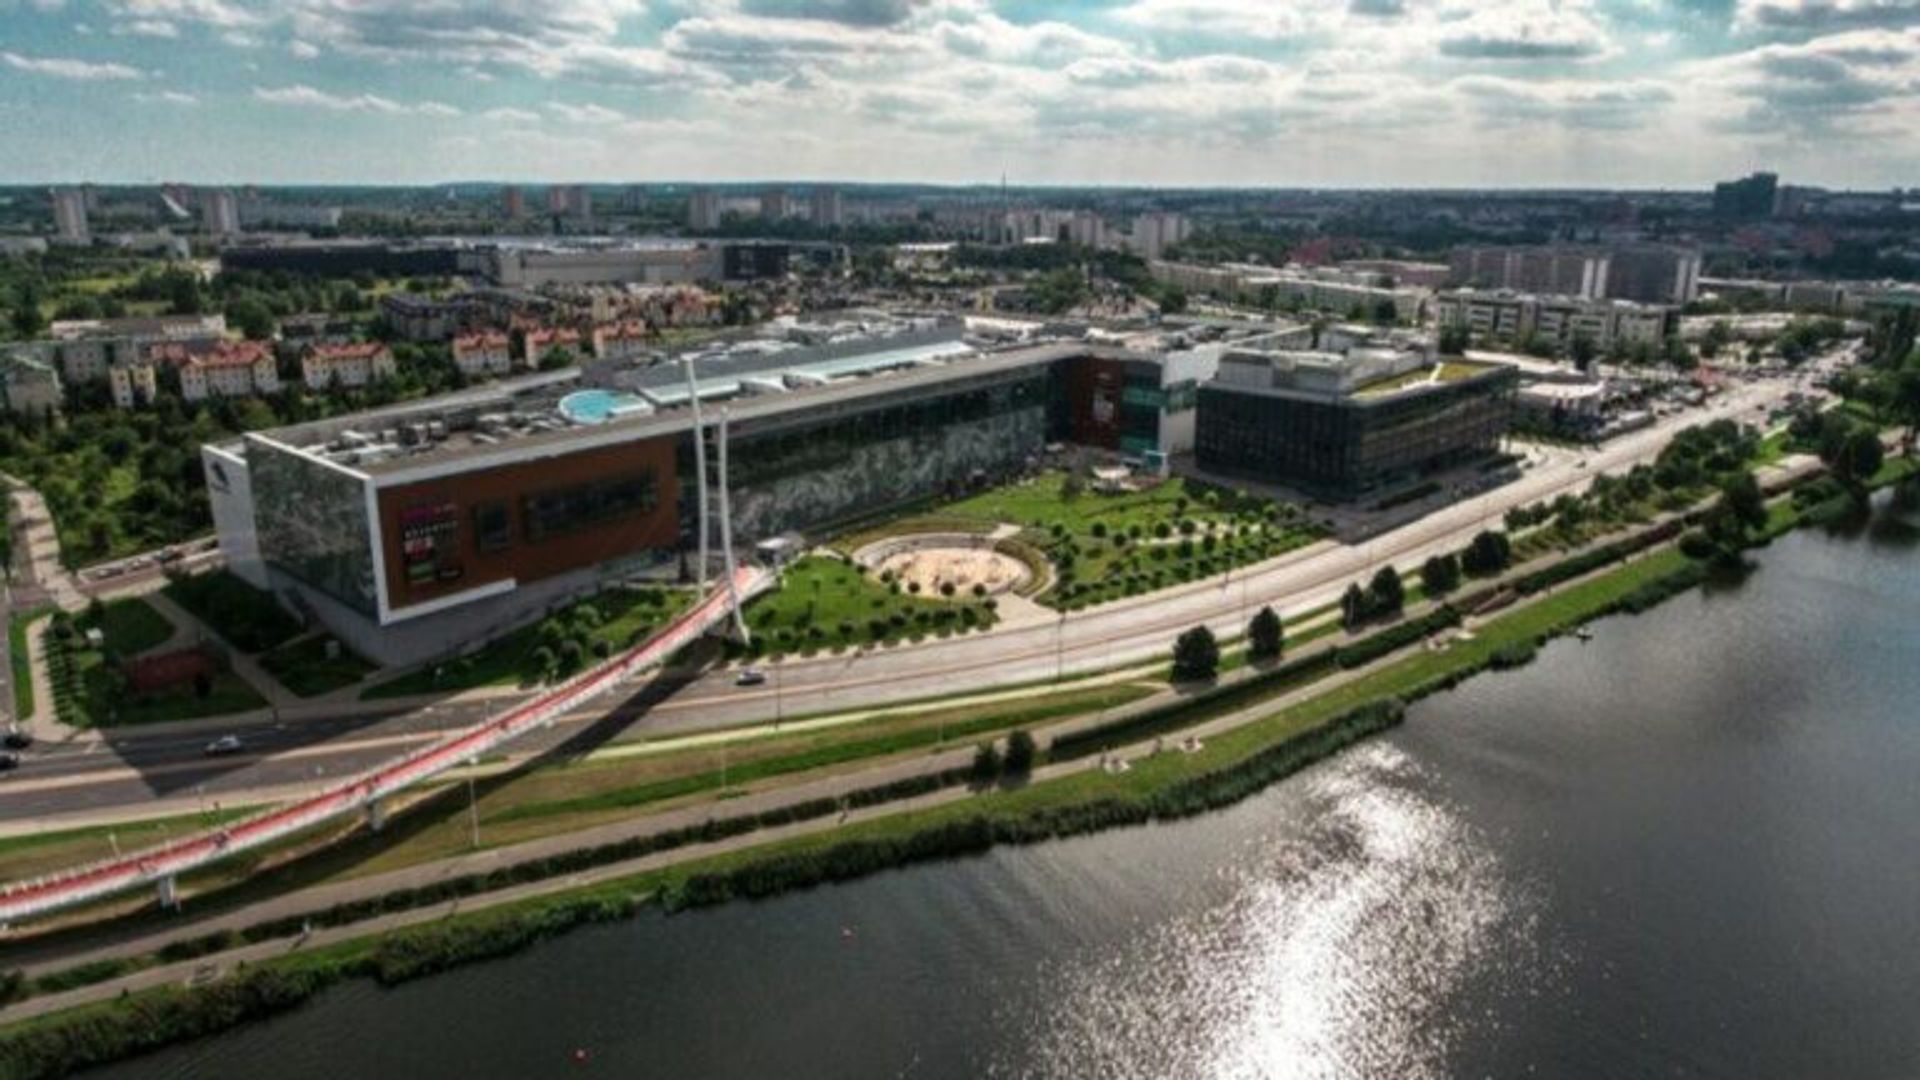 Kolejne wielkie centrum handlowo-rozrywkowe w Polsce zostanie wyburzone